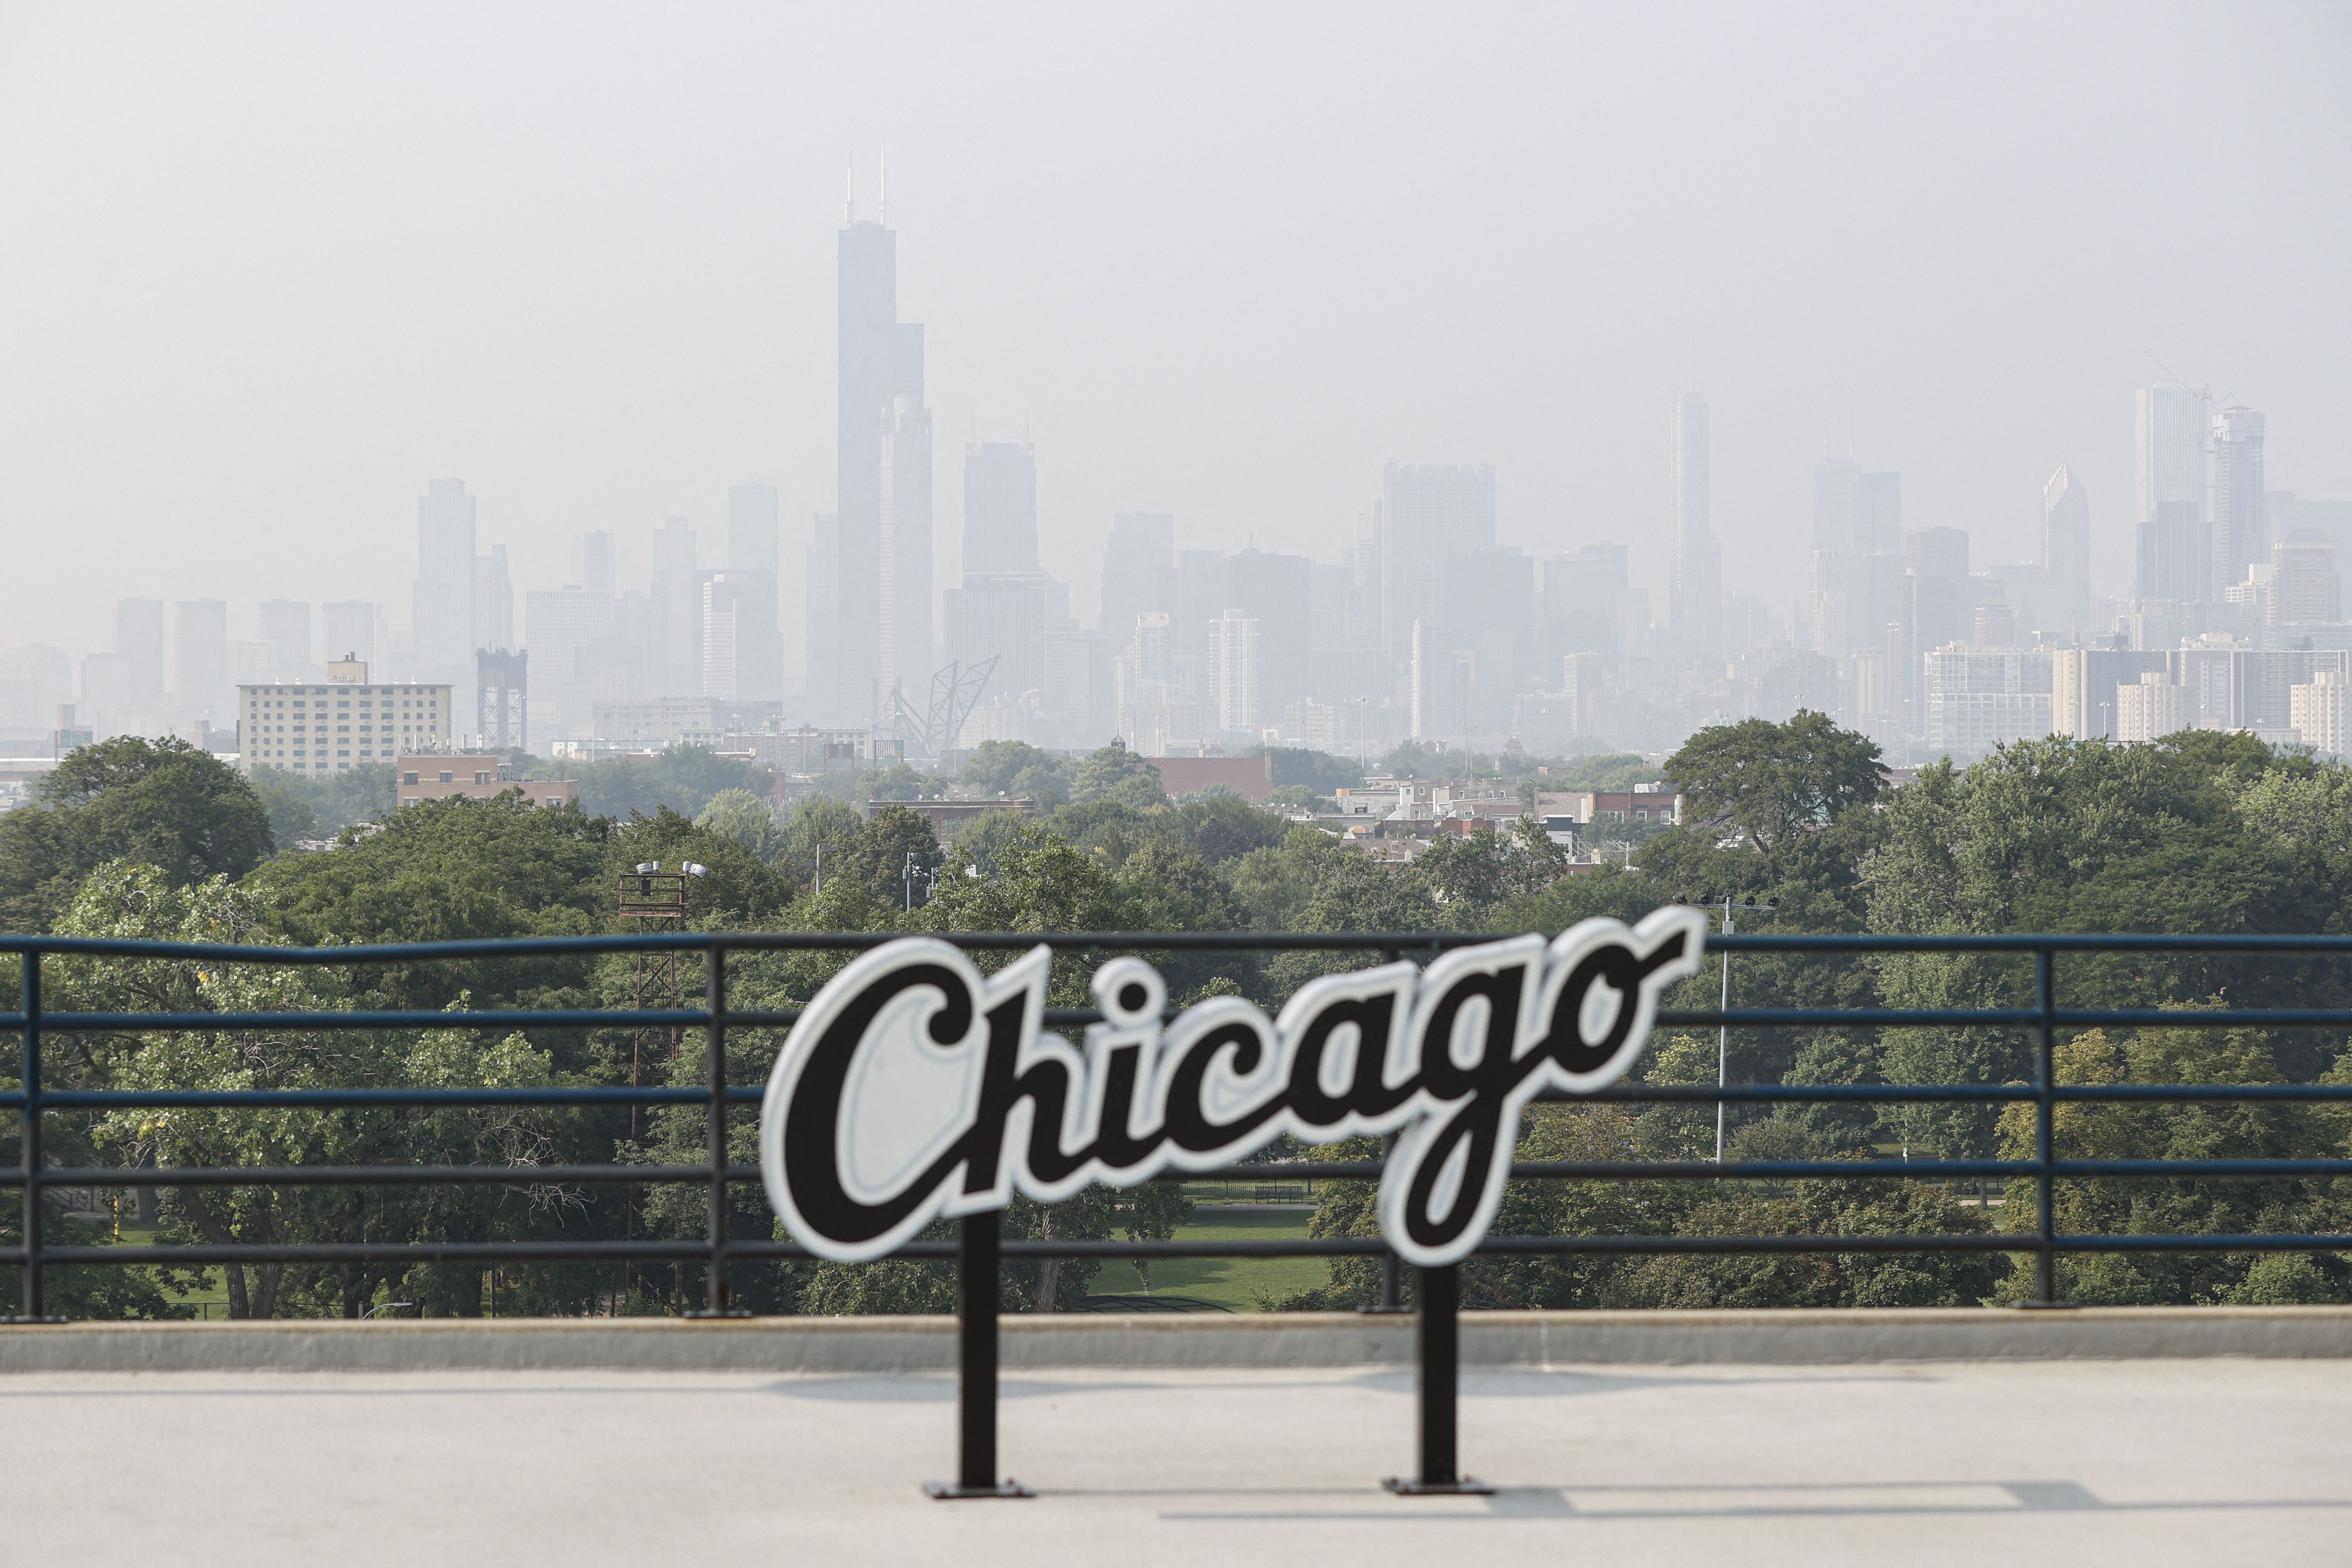 La ciudad de Chicago formó parte de un experimento para medir la temperatura subterránea (USA TODAY)